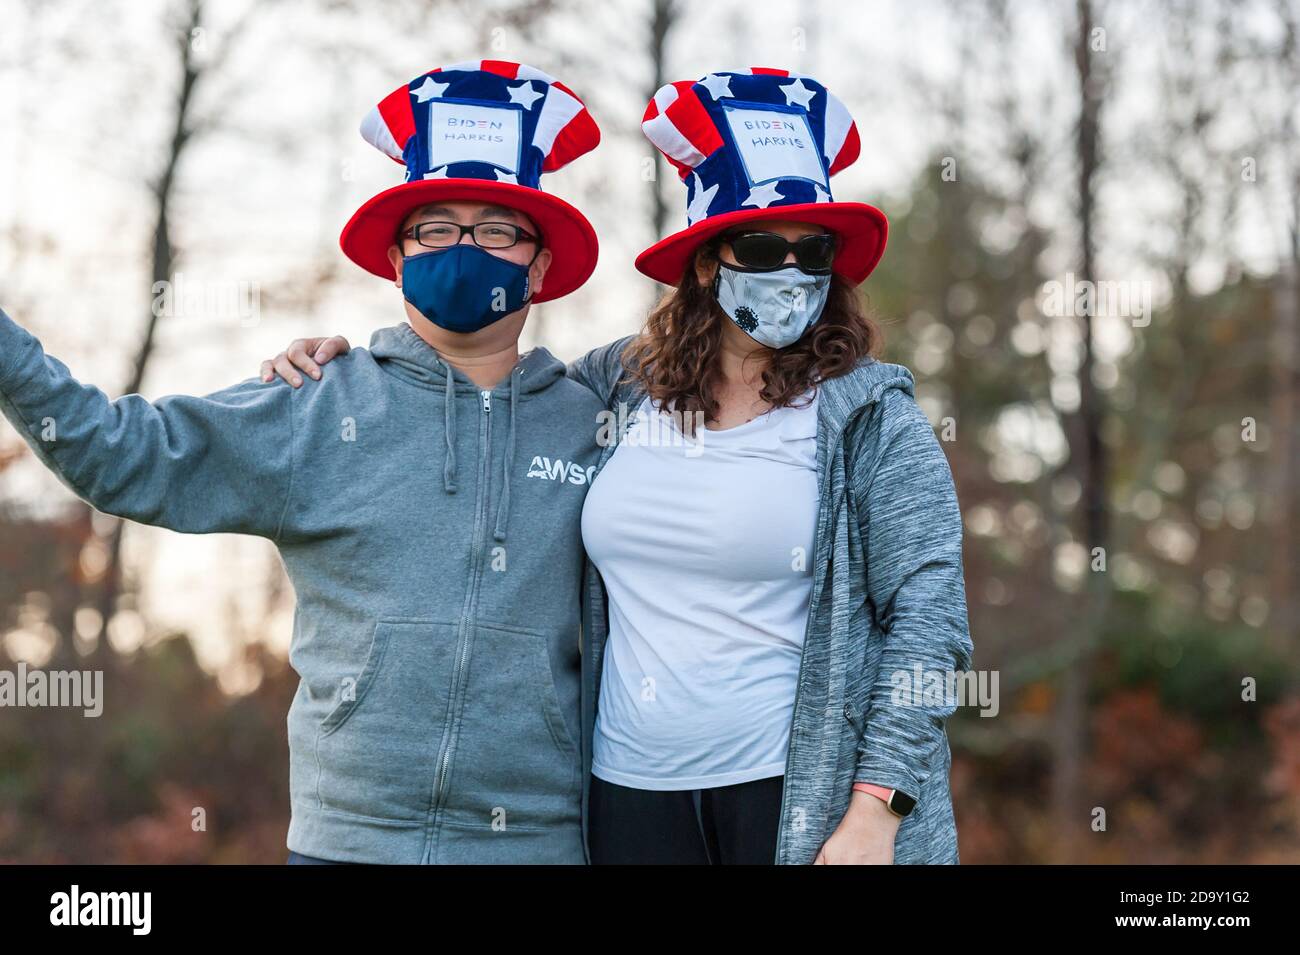 Concord, Massachusetts. November 2020. Menschen feiern den Sieg von Biden-Harris bei der Wahl 2020. Stockfoto